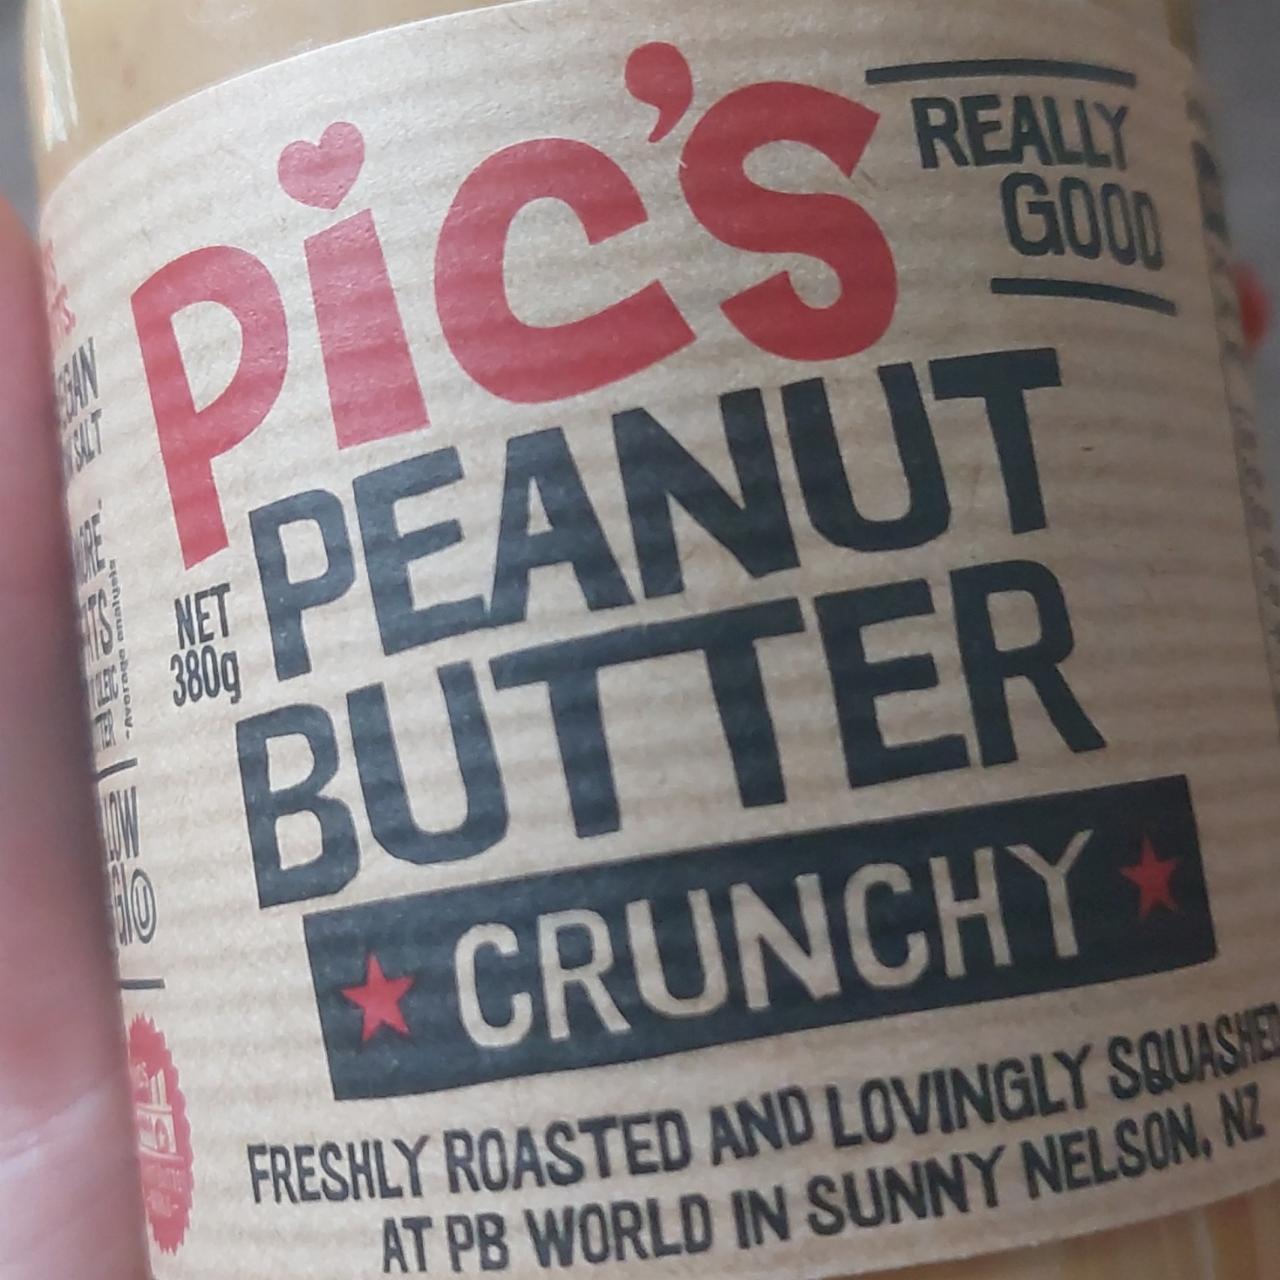 Fotografie - peanut butter crunchy Pic's